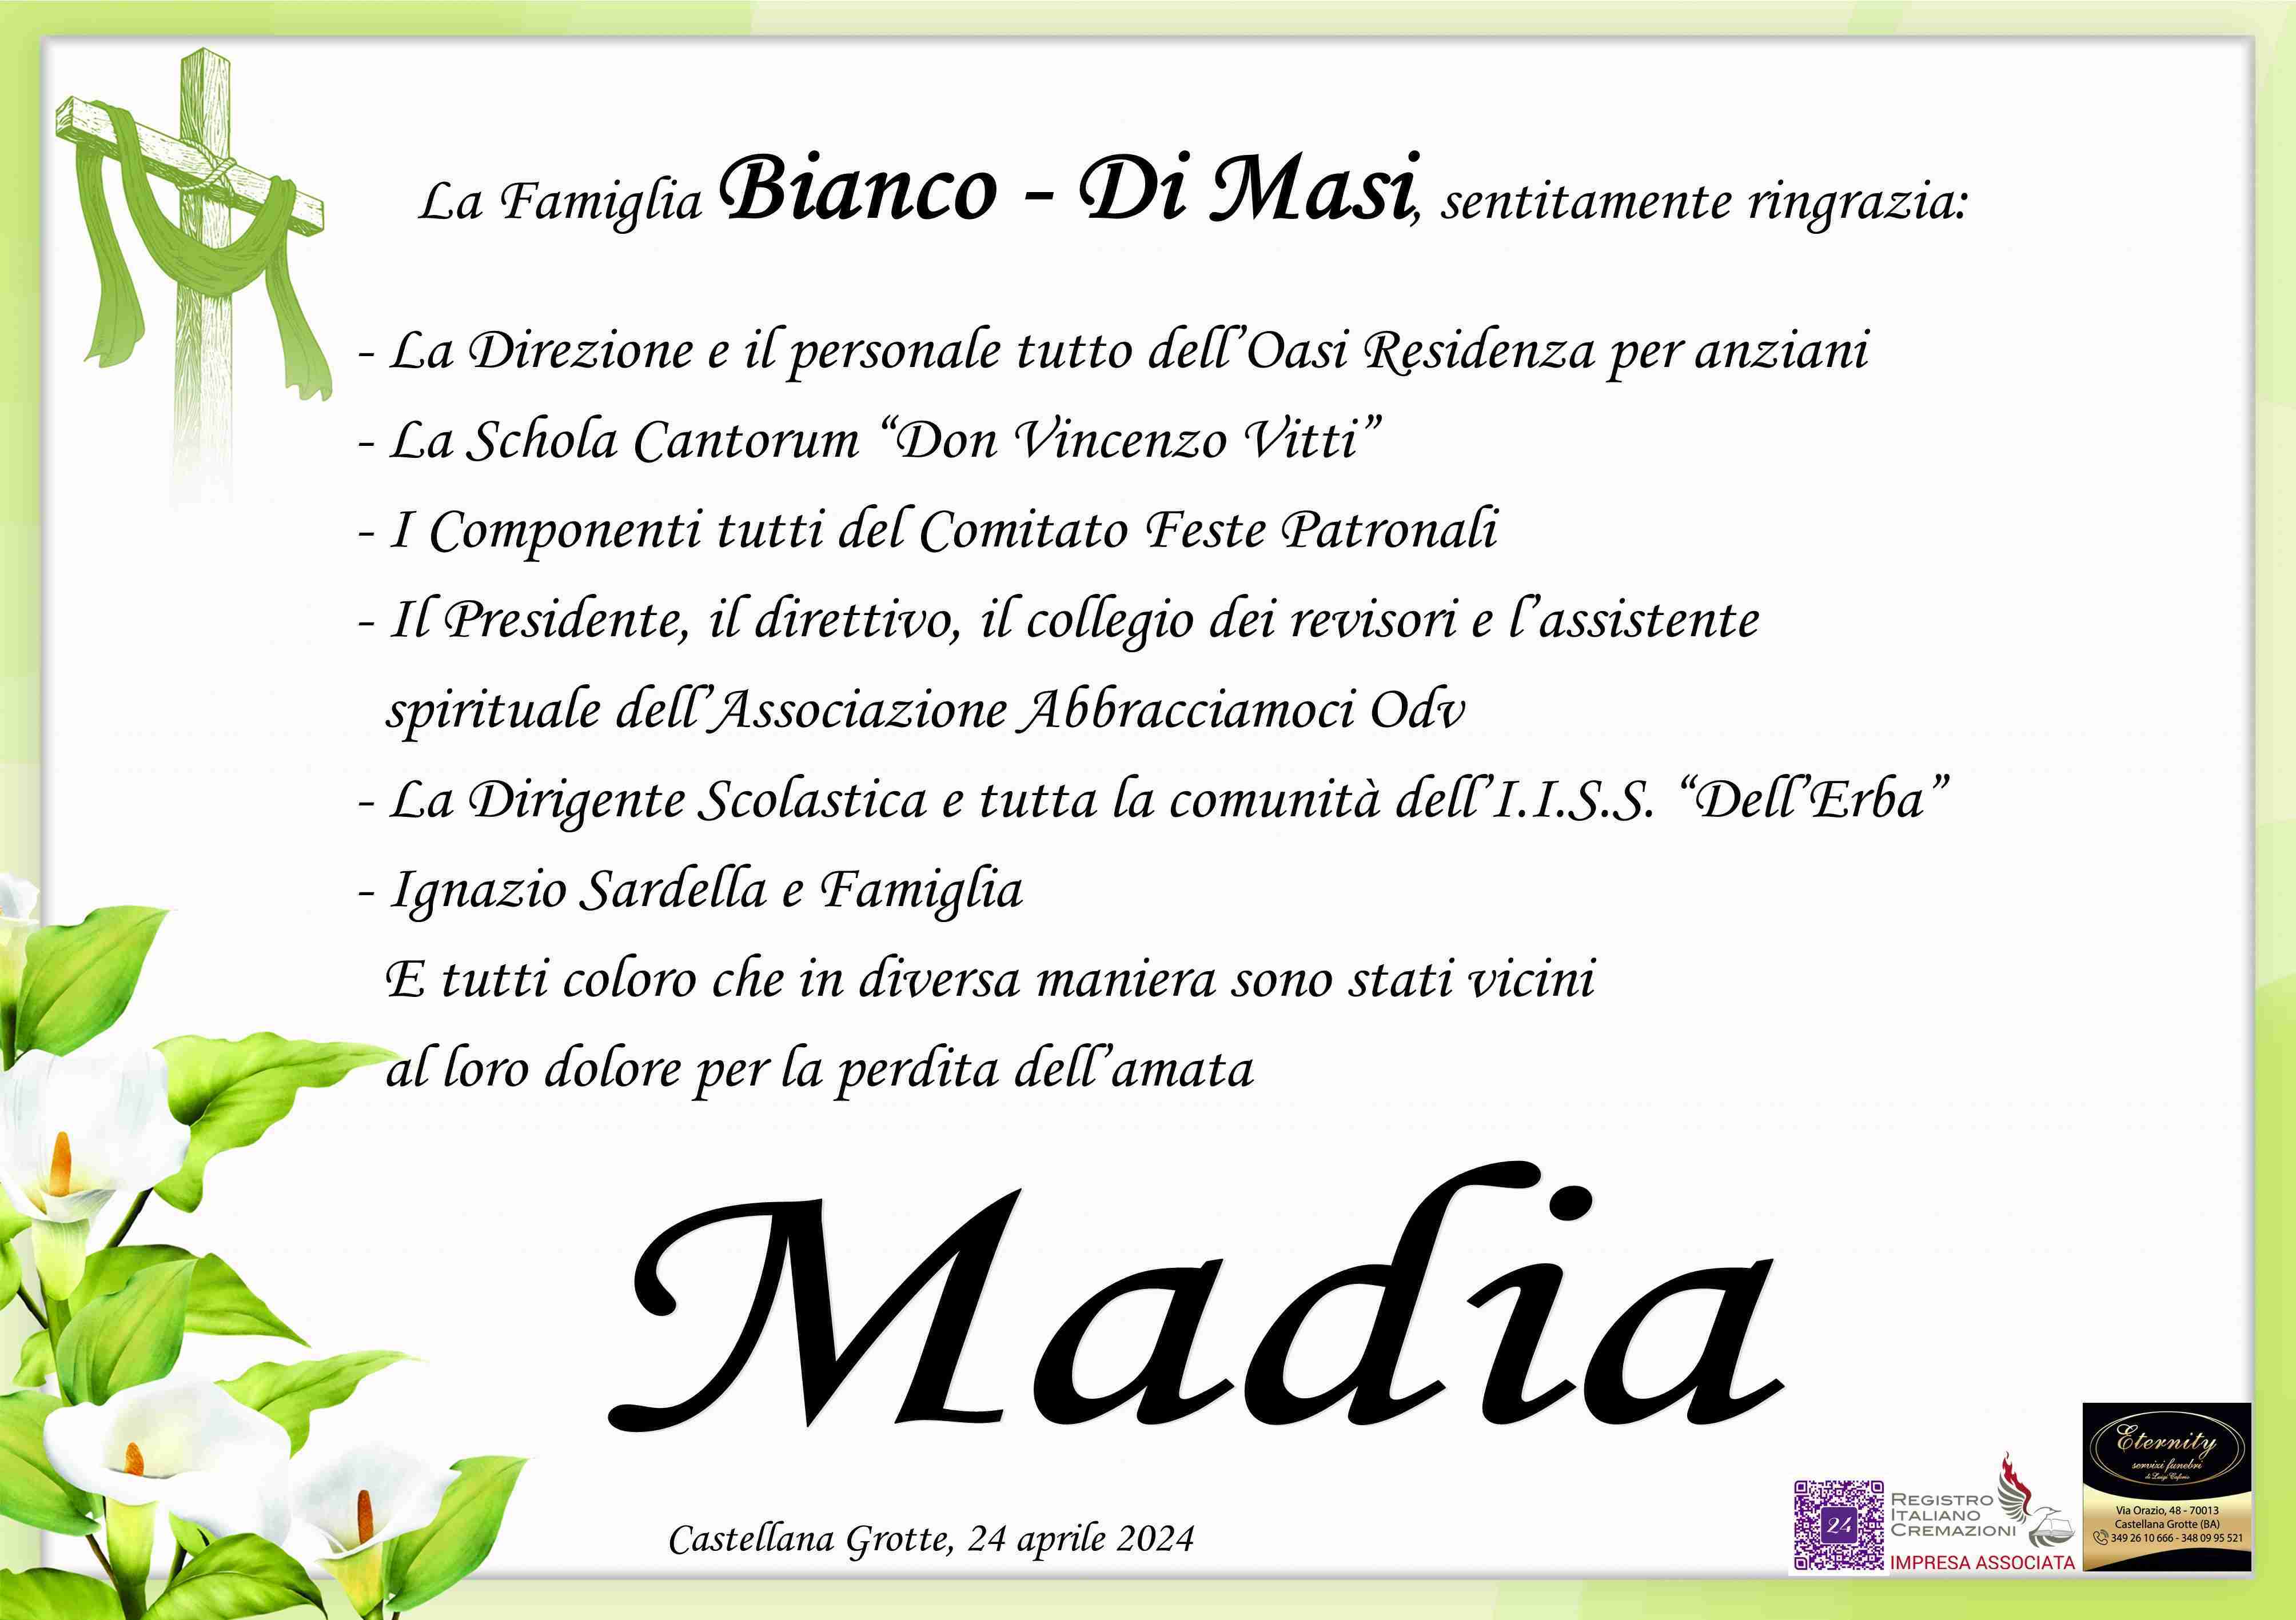 Madia Mastronardi